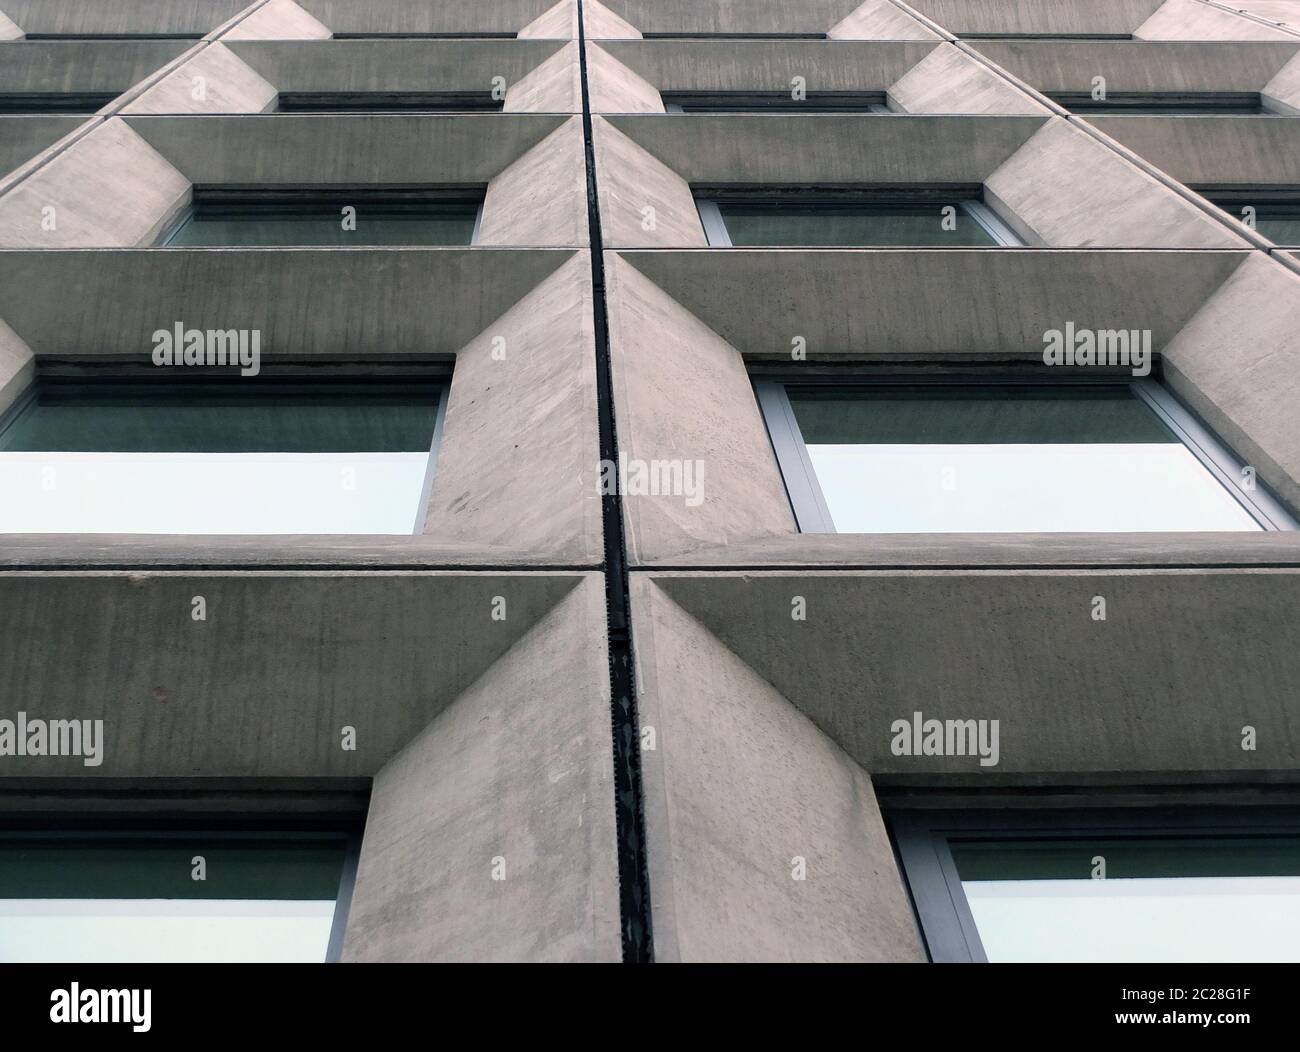 Perspektivischer Blick auf geometrische Winkelbetonfenster an der Fassade eines Gebäudes im brutalistischen Stil der 1960er Jahre Stockfoto